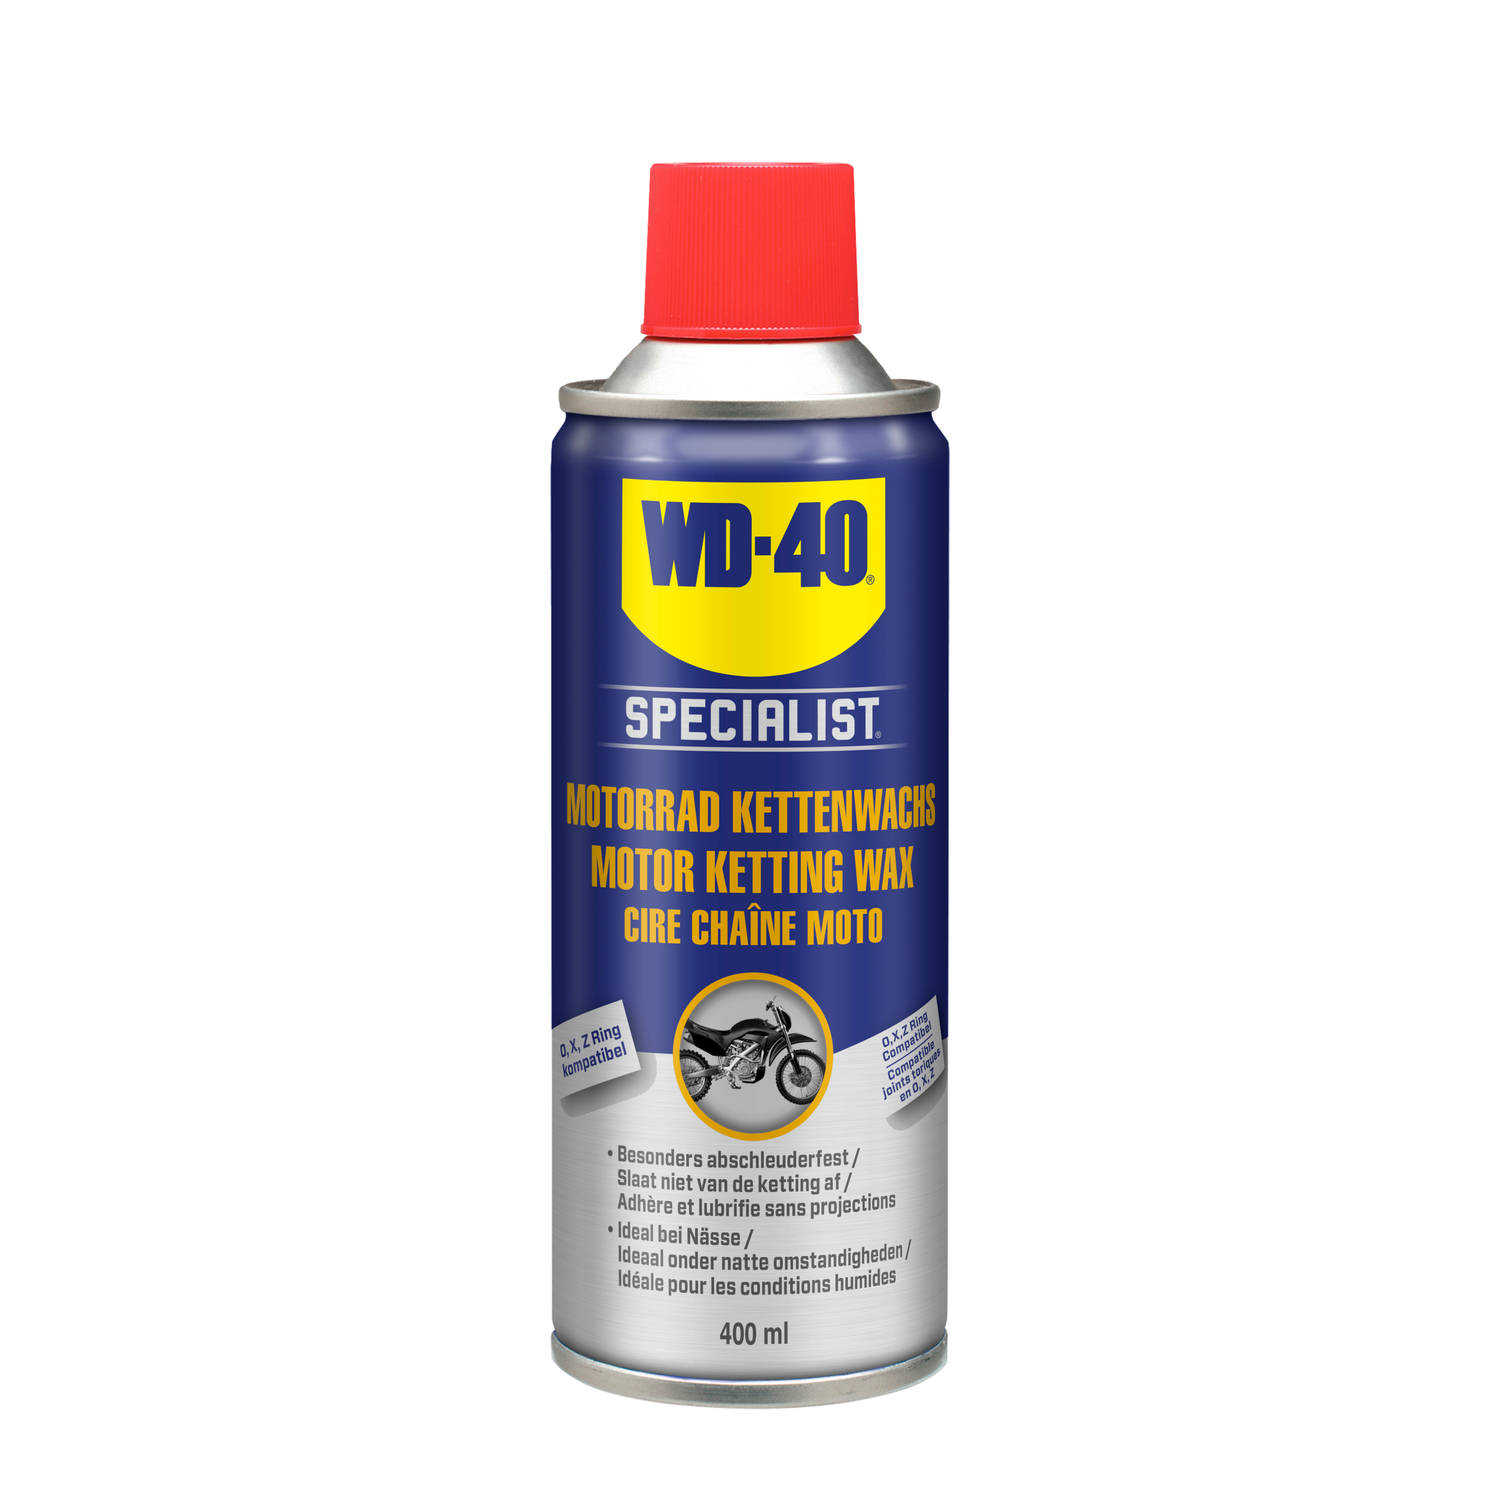 WD-40 Specialist® Motor Ketting Wax 400 ml